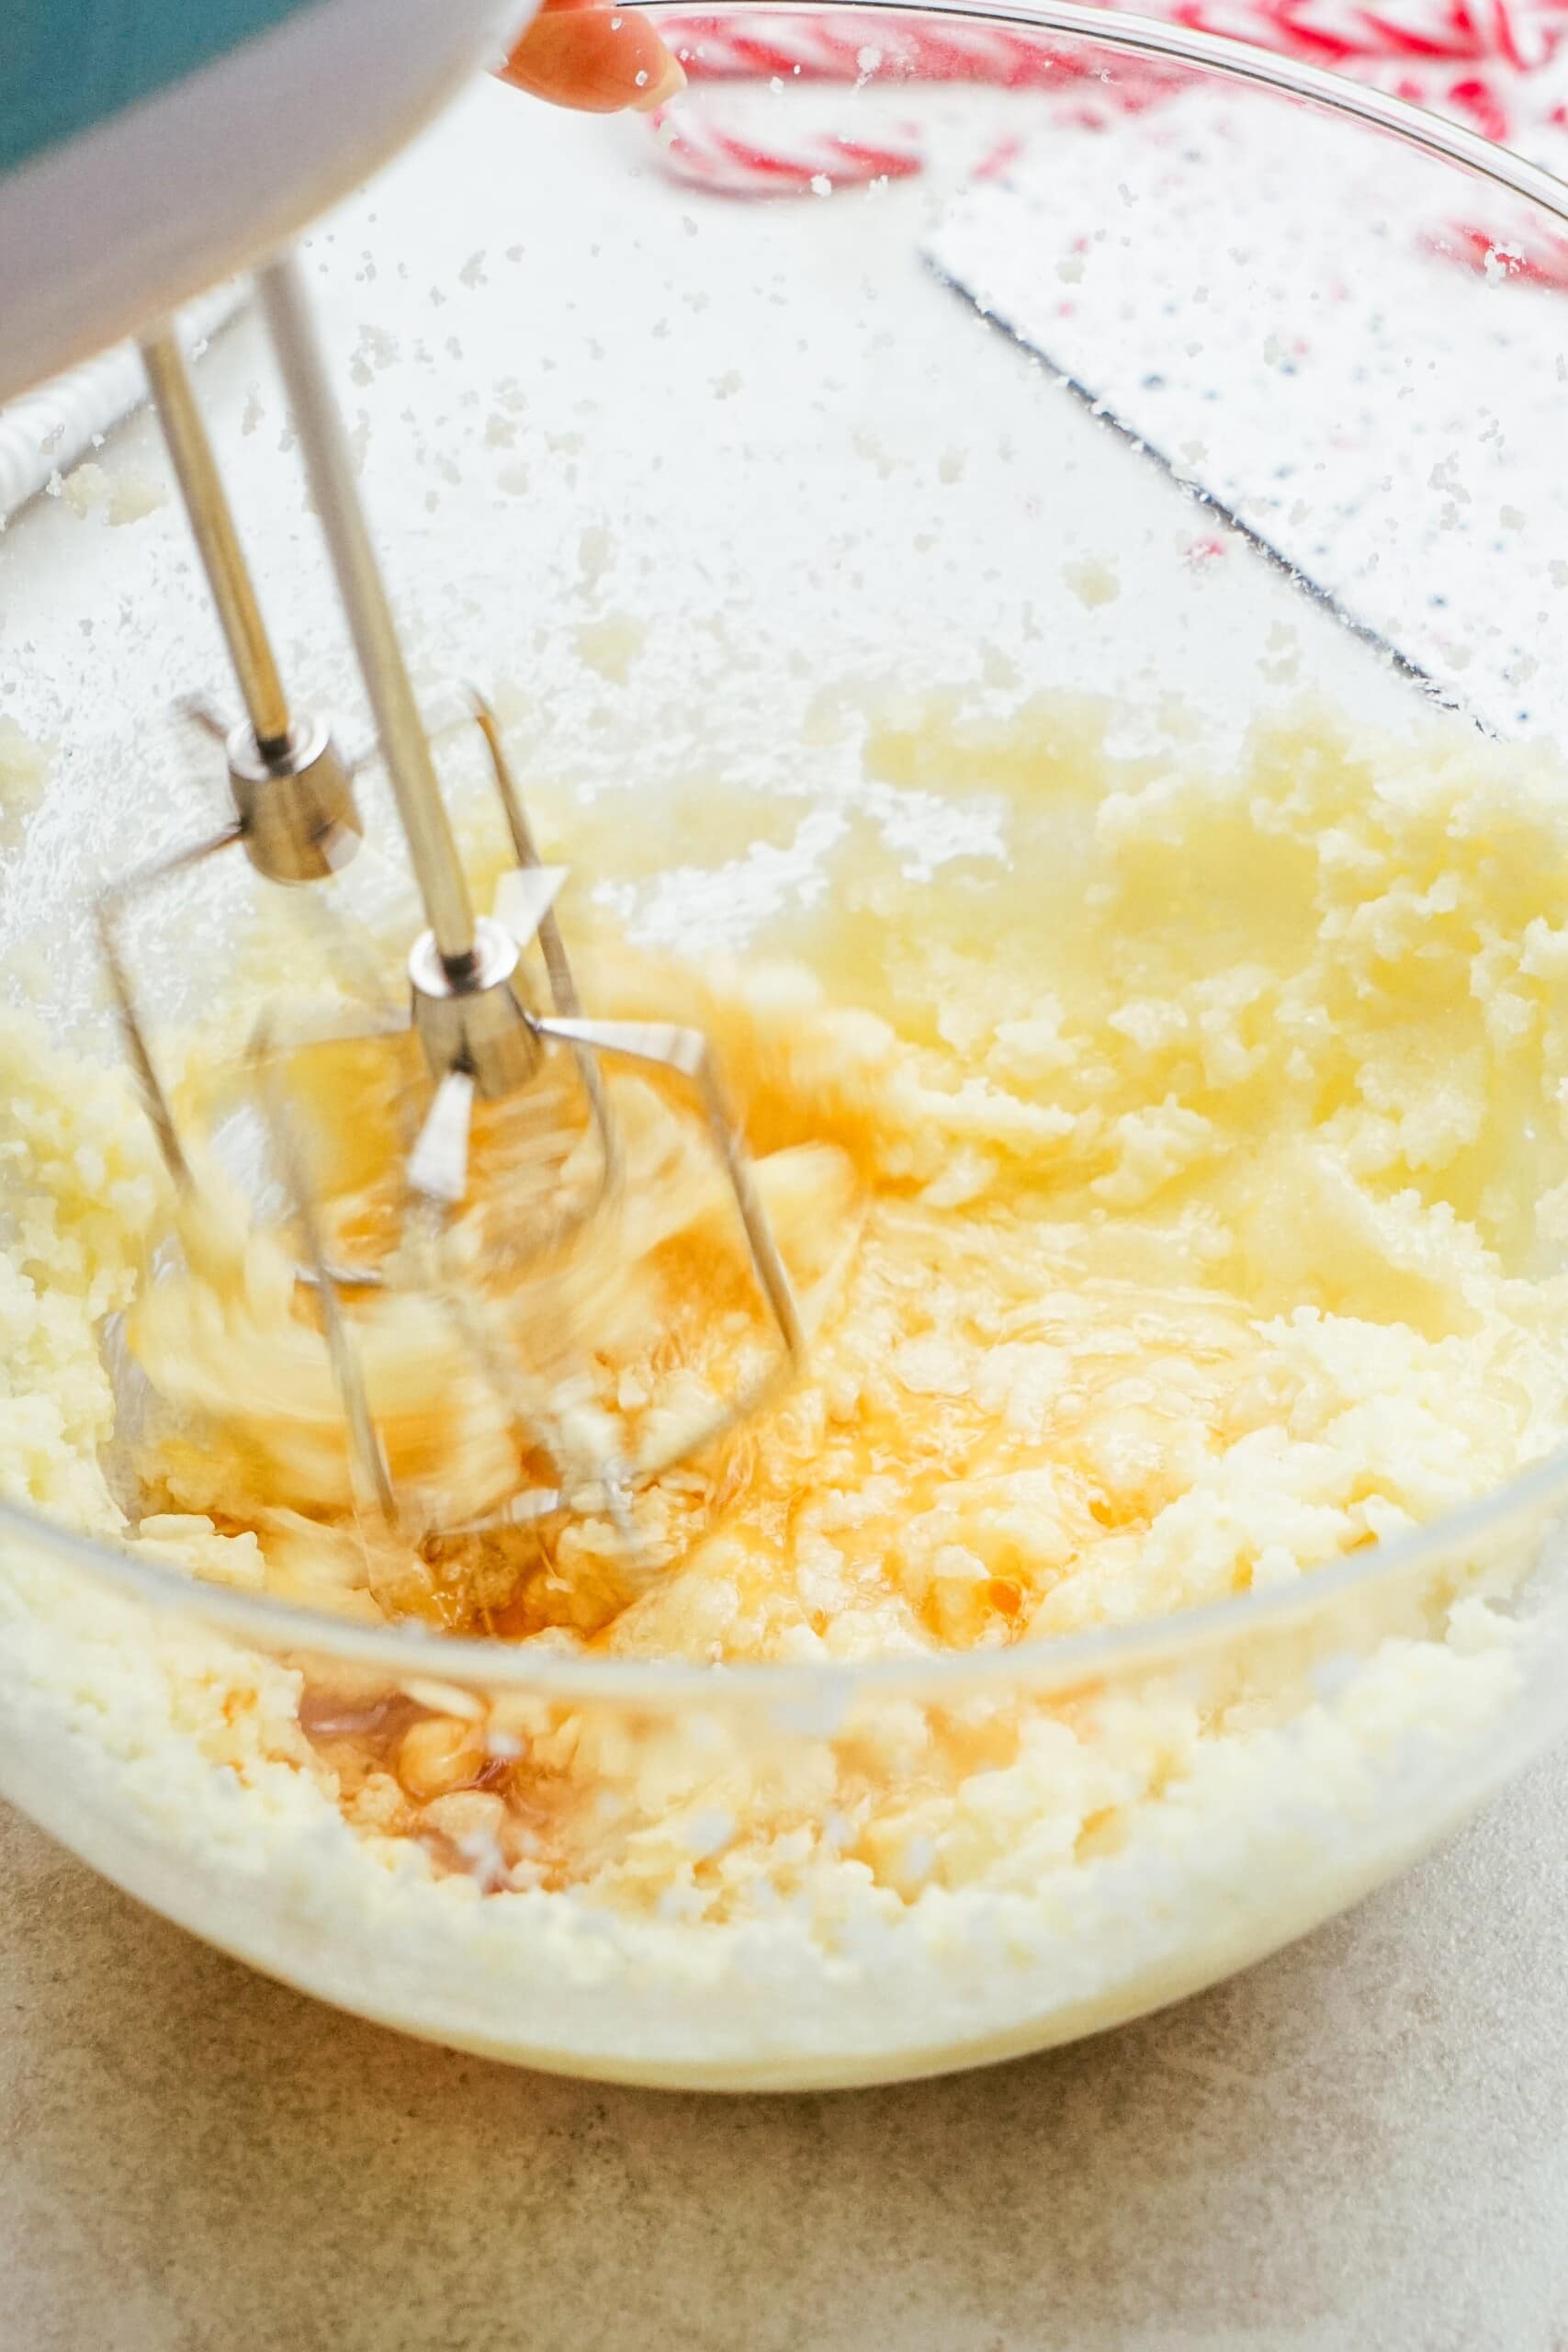 electric mixer combing the egg into dough mixture